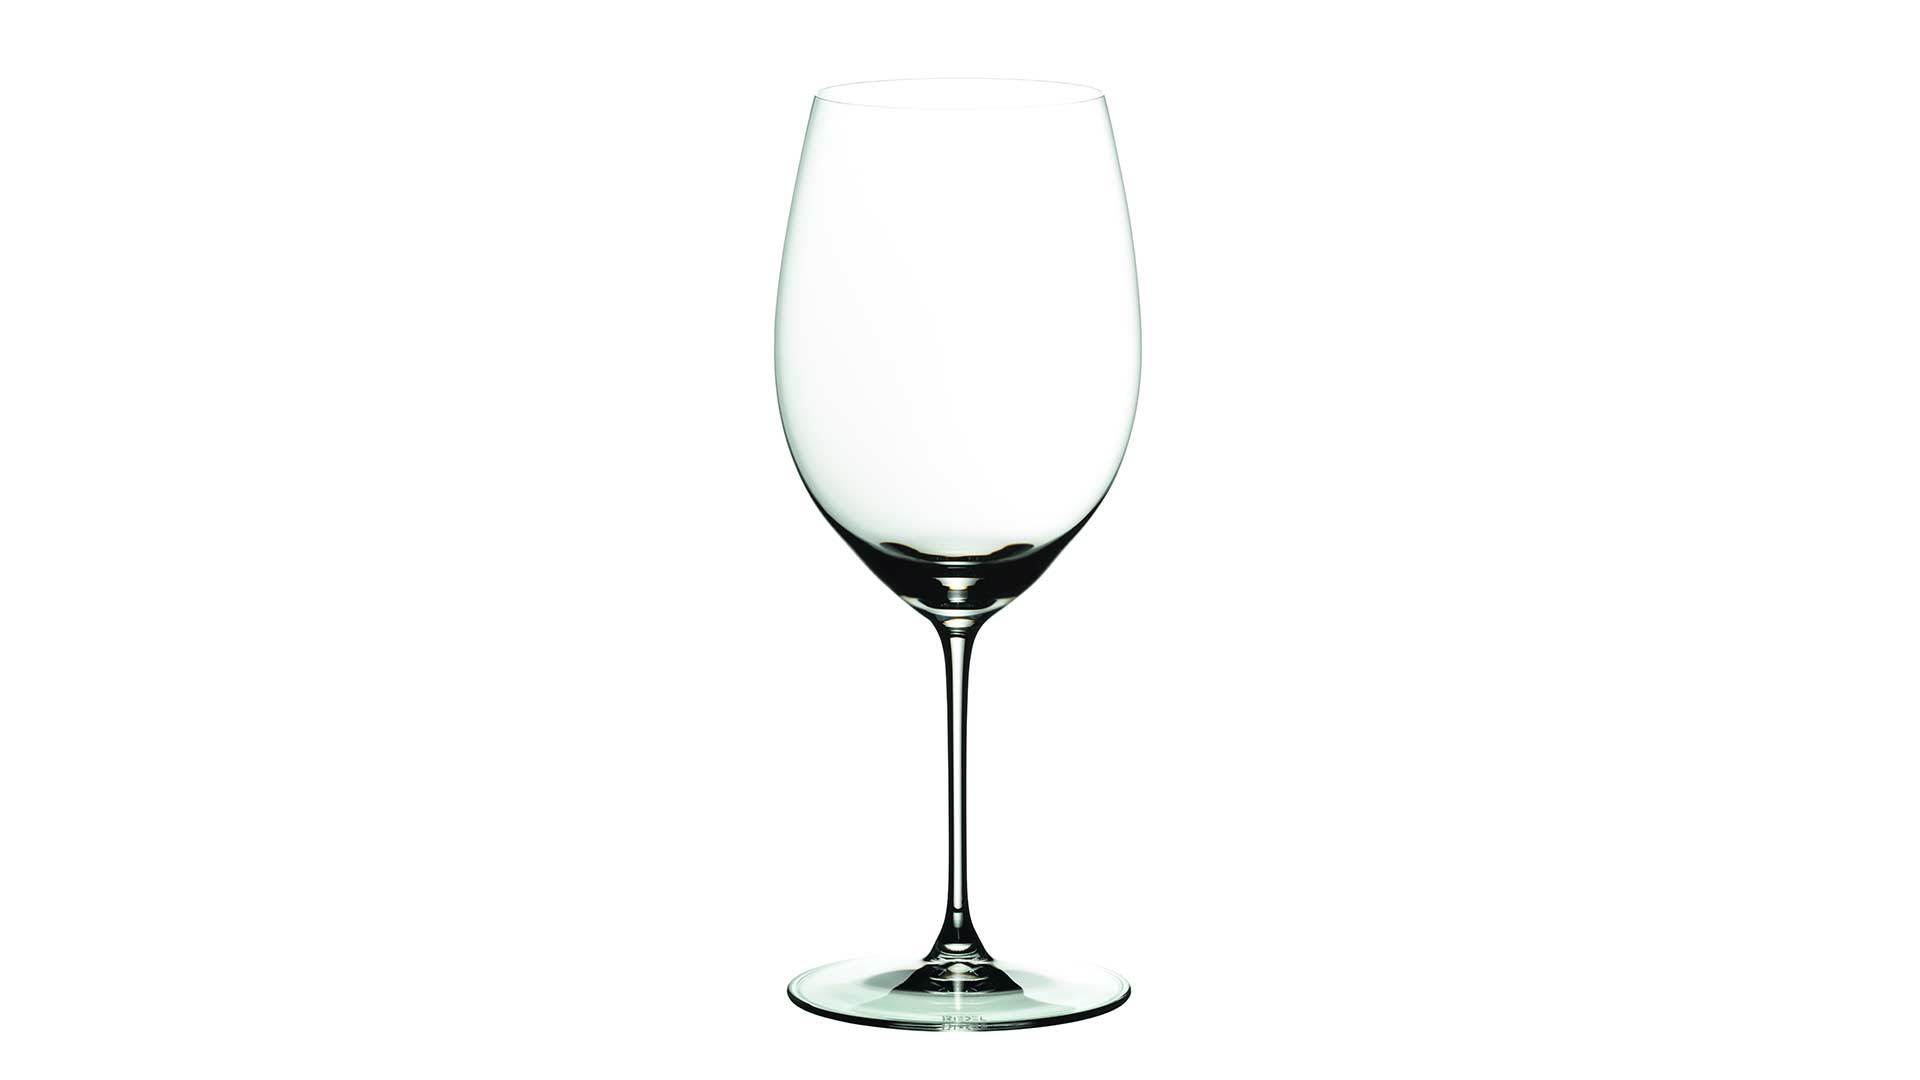 Набор бокалов для красного вина Riedel Veritas Cabernet.Merlot 625 мл, 2 шт